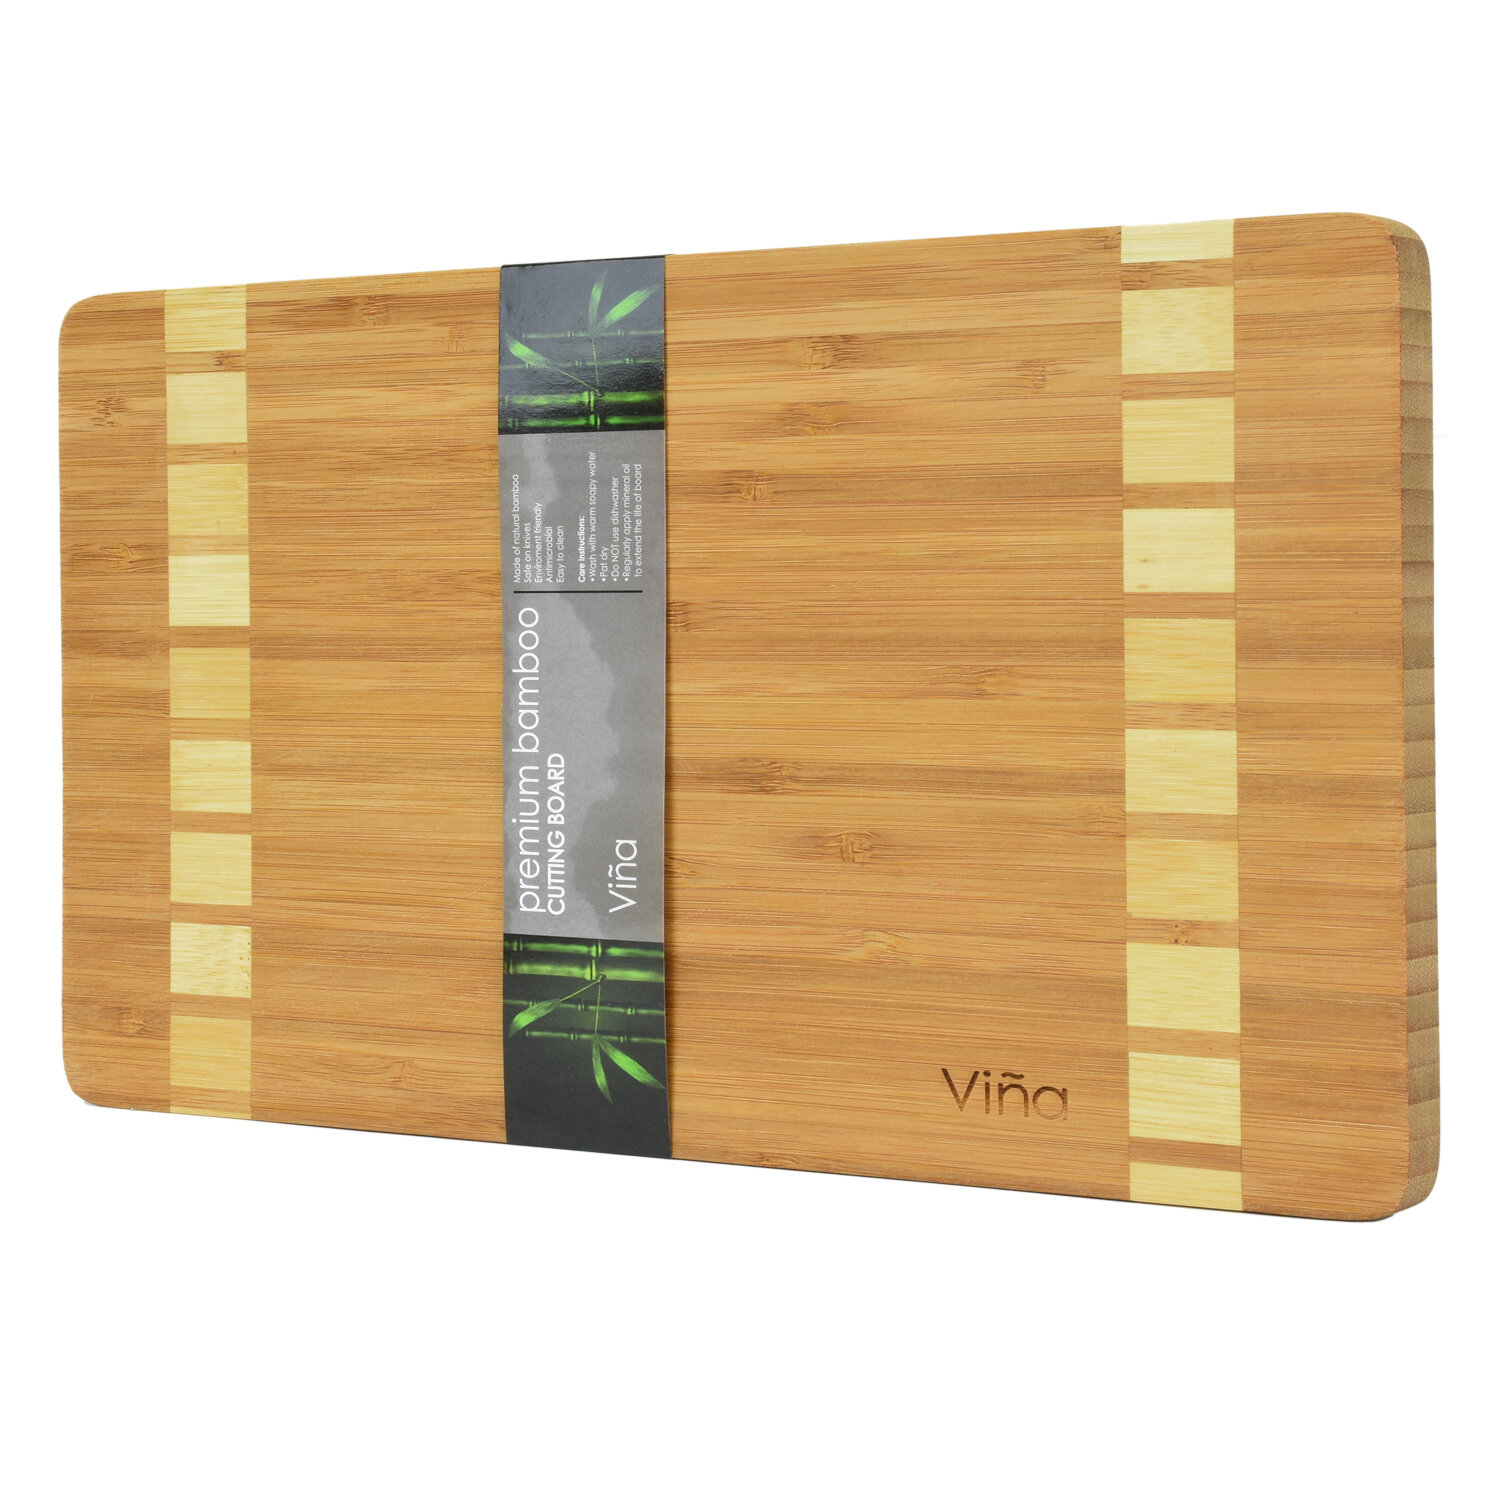 Eco-Friendly Cutting Boards